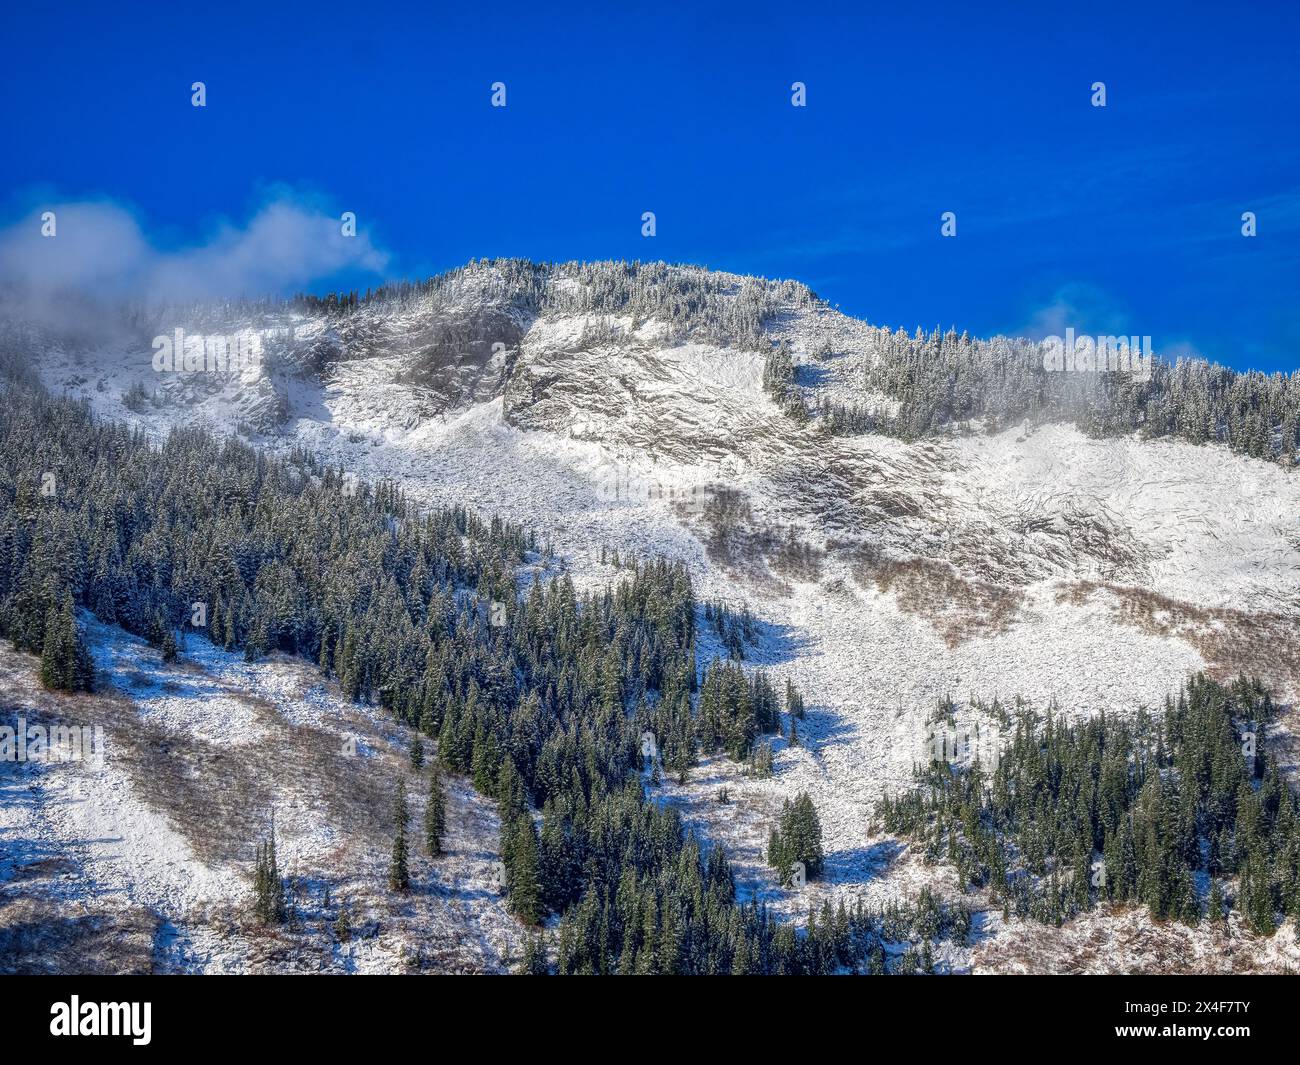 Stati Uniti, Stato di Washington. Cascate centrali, Mount Baker Snoqualmie National Forest. Vista sulle megattere con nuvole e neve fresca Foto Stock